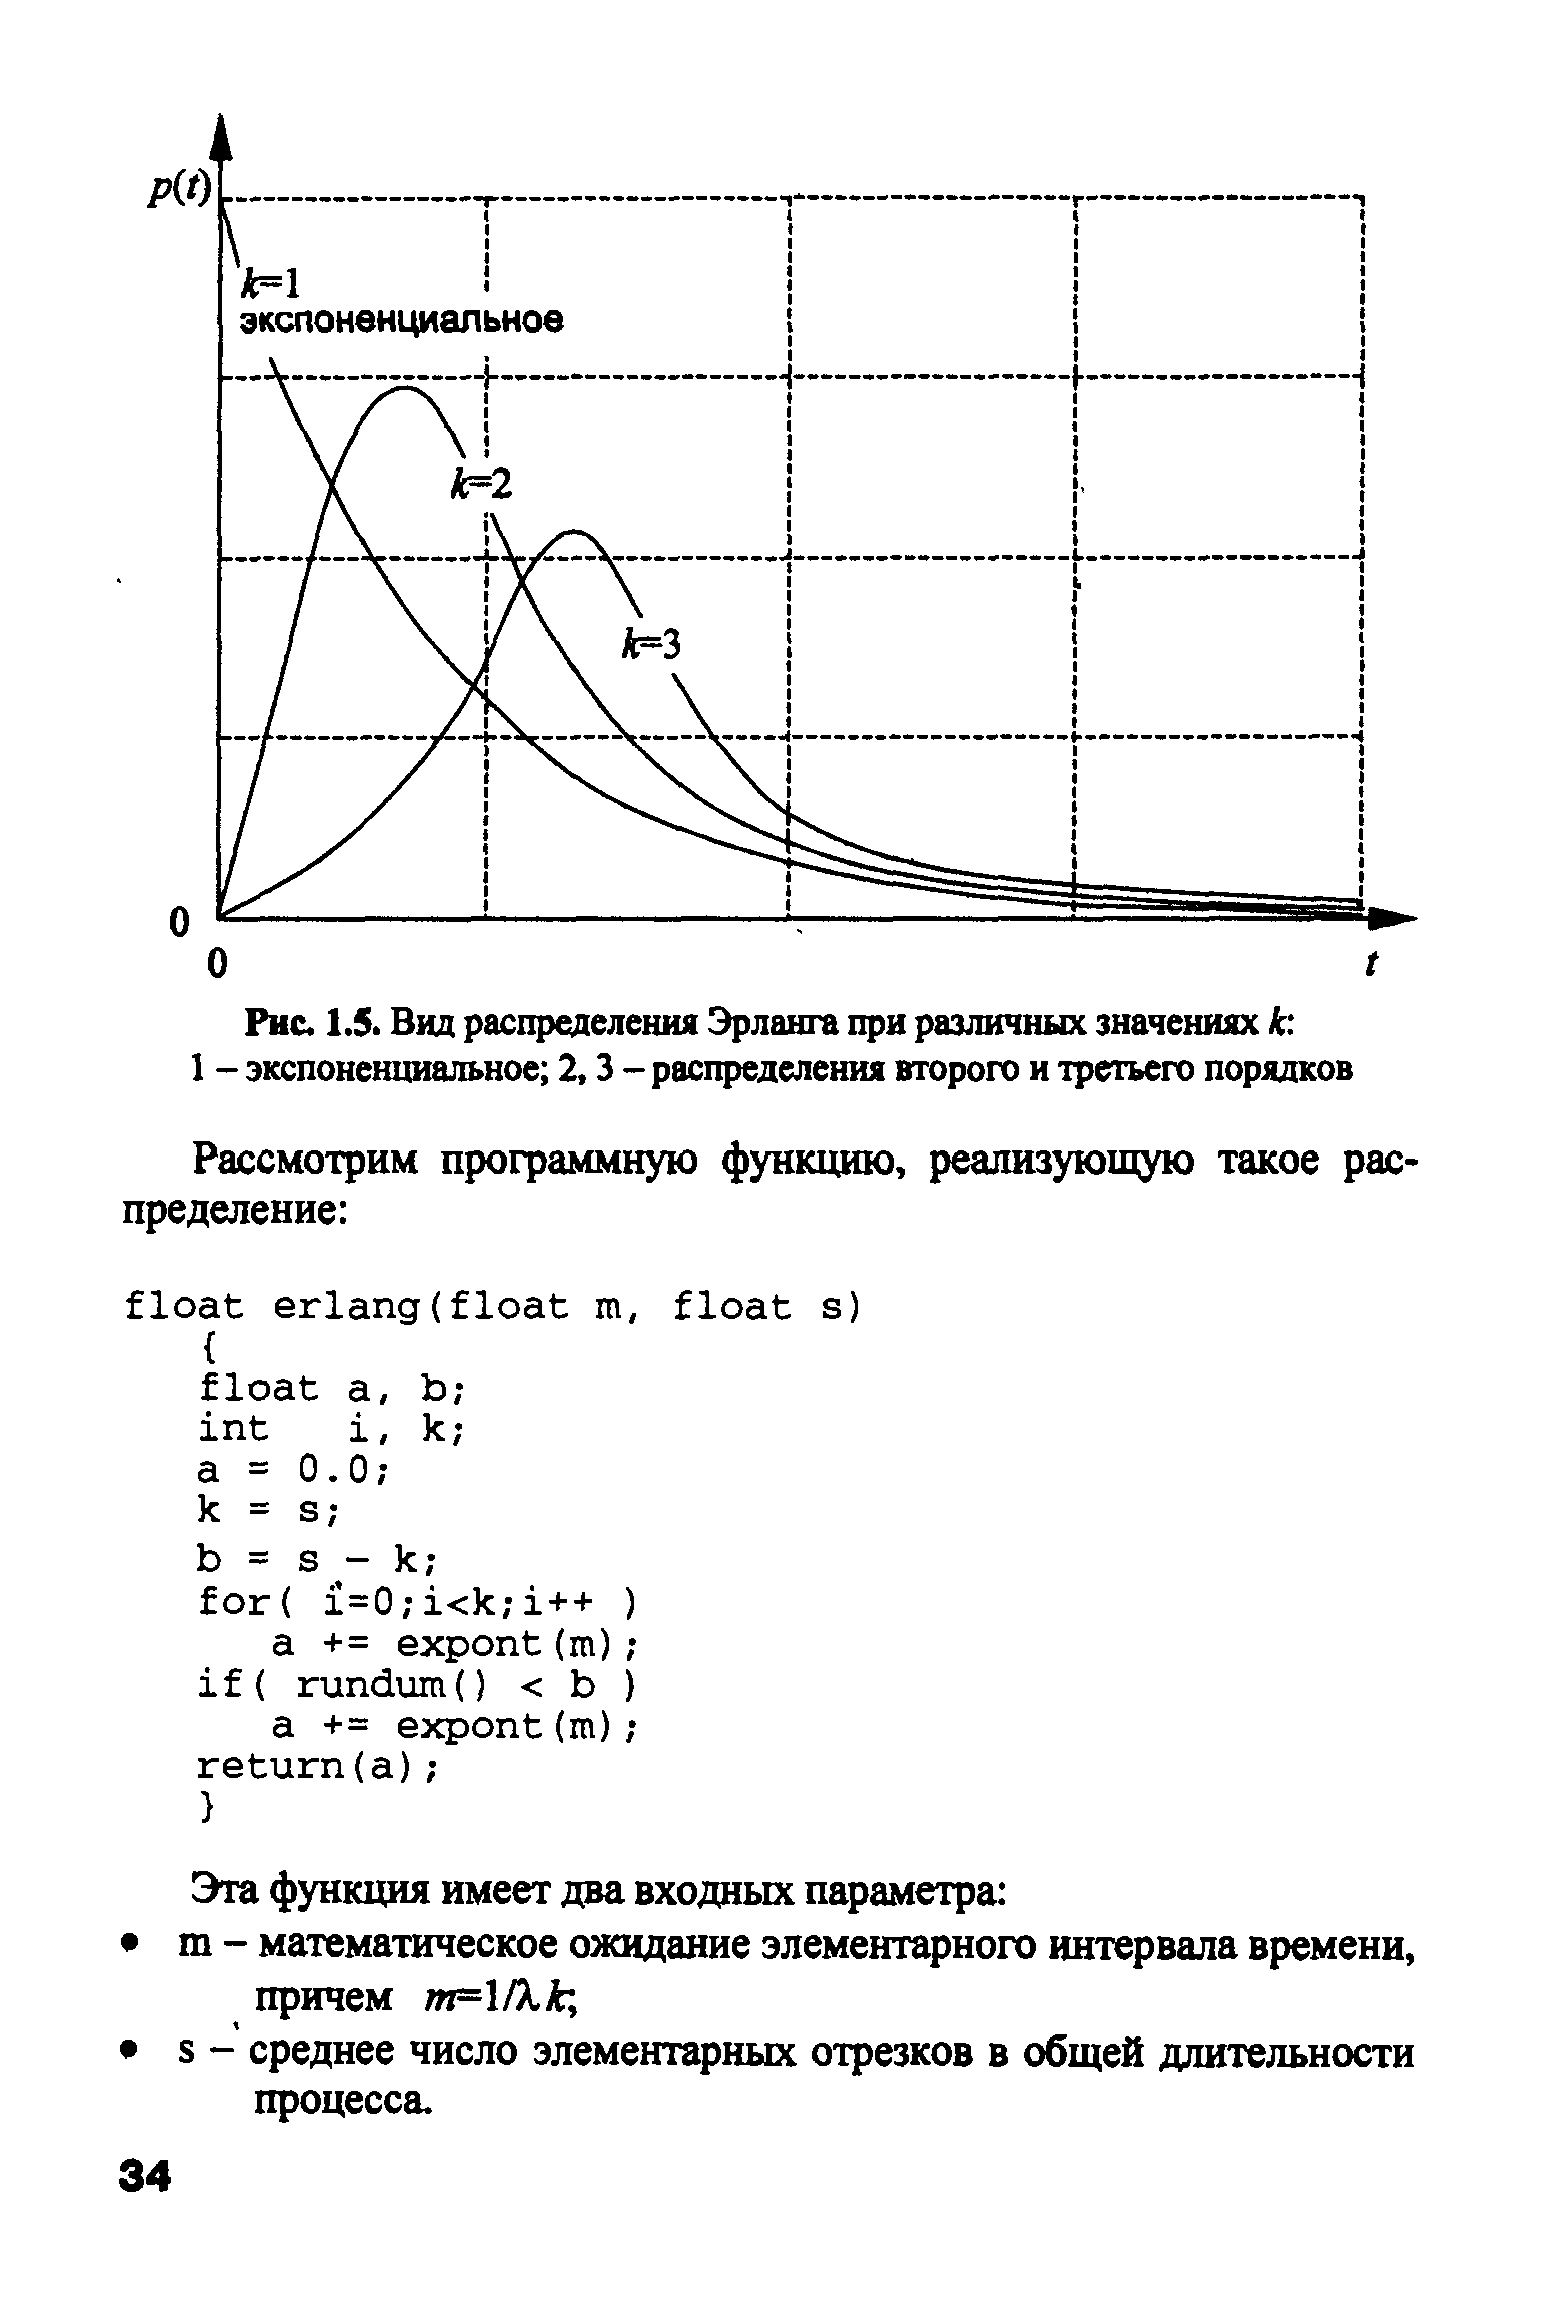 Рис. 1.5. Вид распределения Эрланга при различных значениях k 1 - экспоненциальное 2, 3 - распределения второго и третьего порядков
